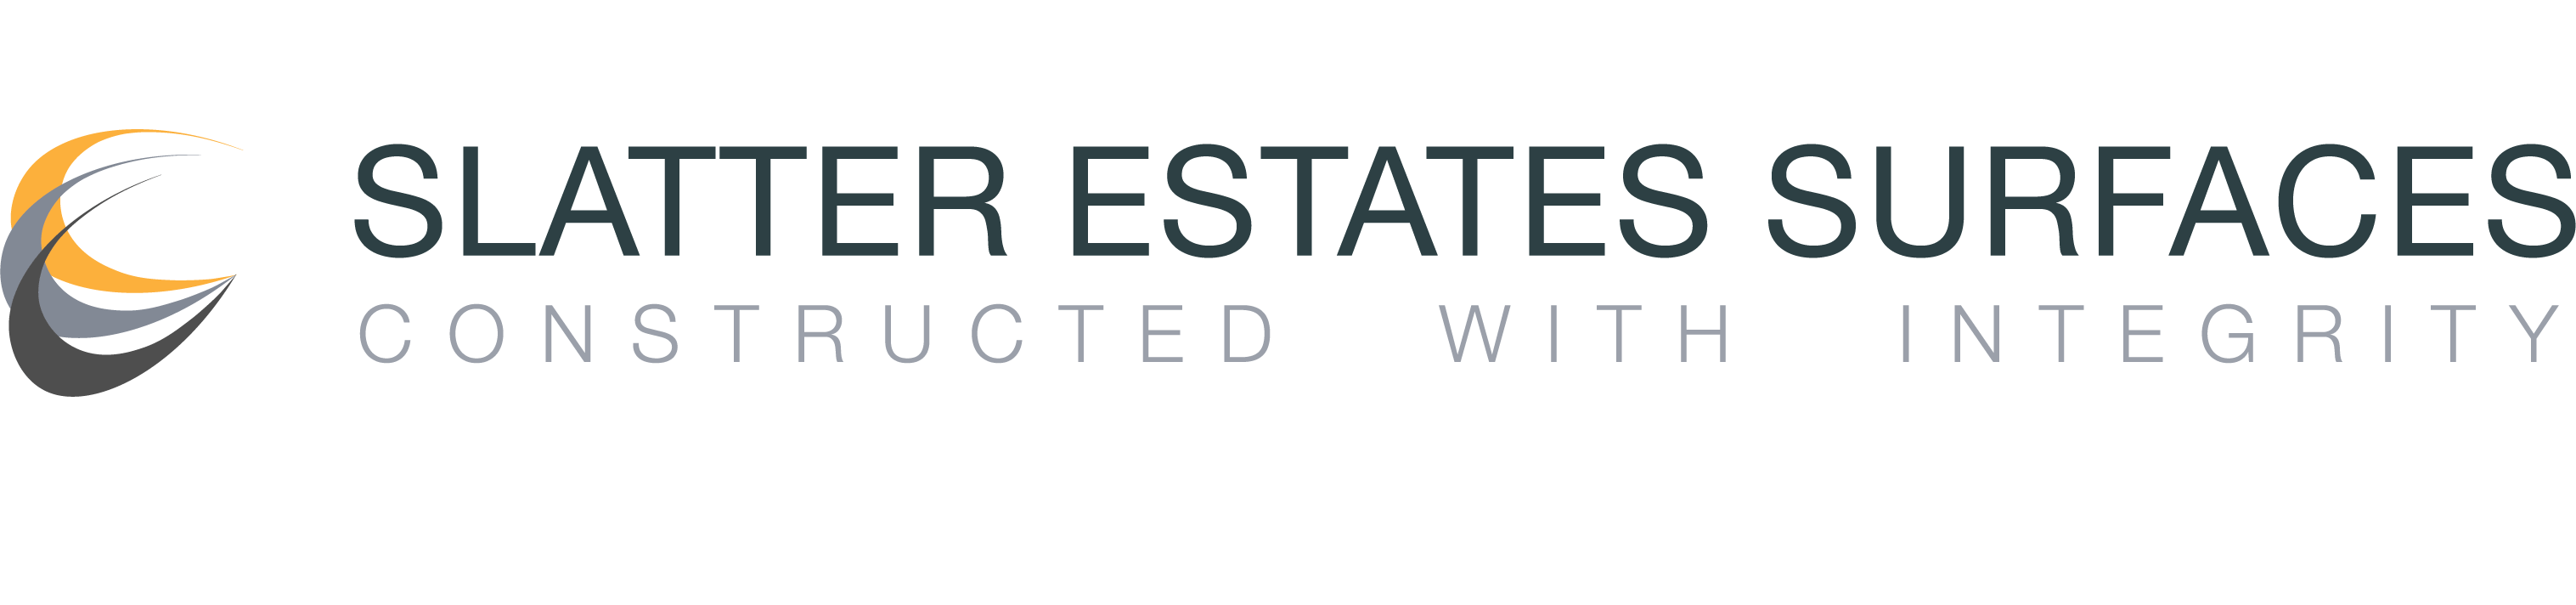 PNG Slatter Estates Surfaces logo strapline